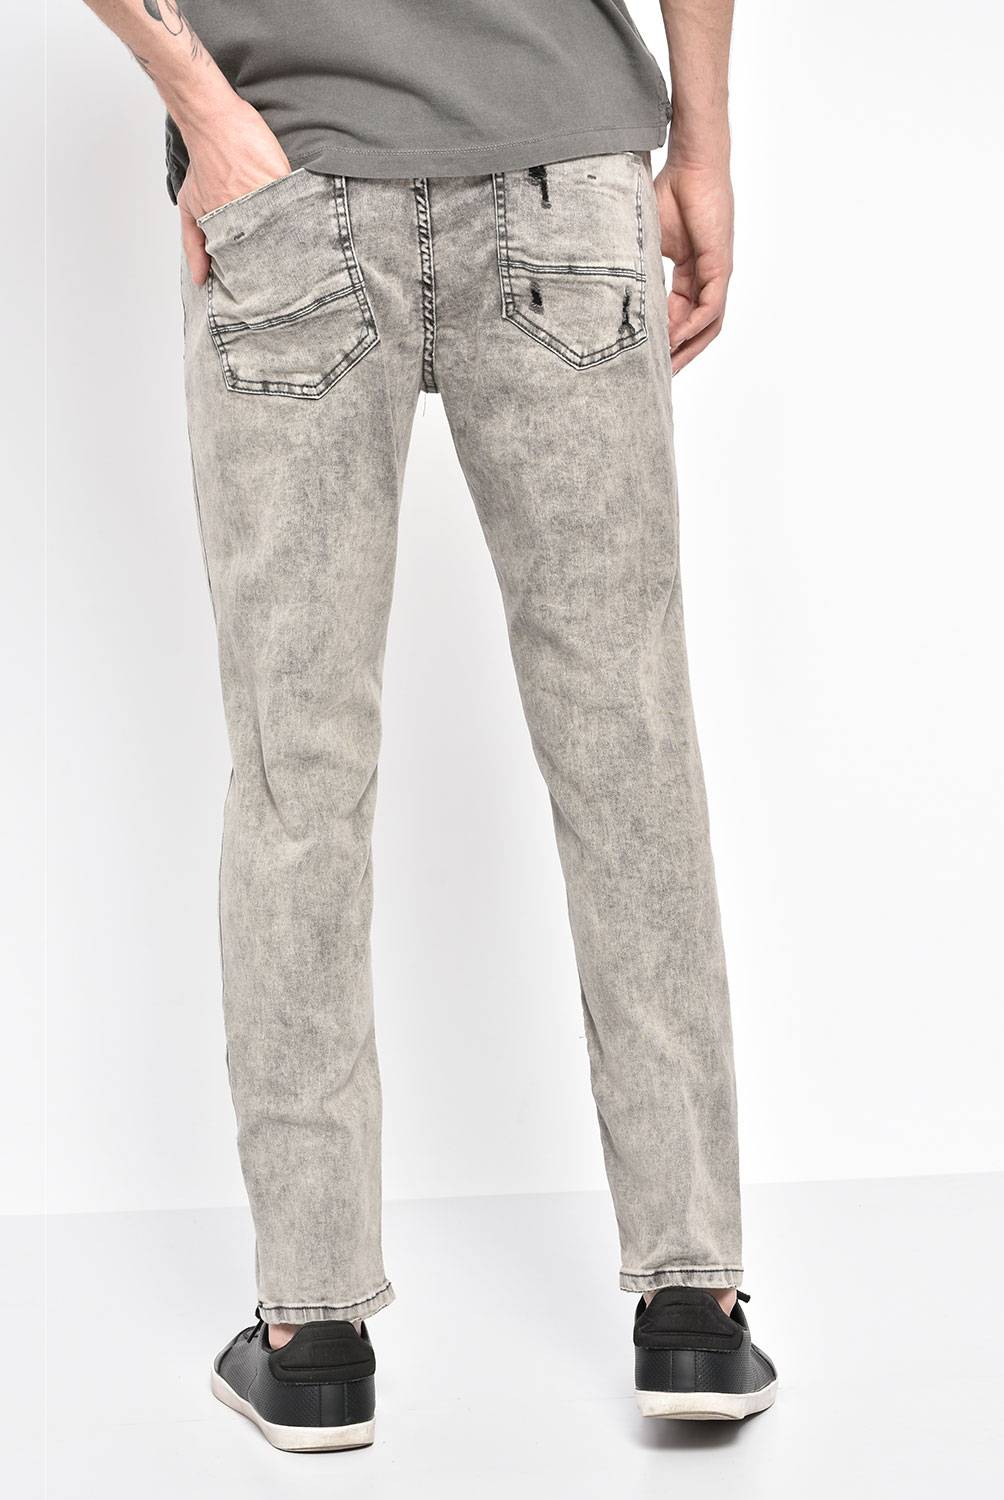 MOSSIMO - Pantalón Jeans Hombre 